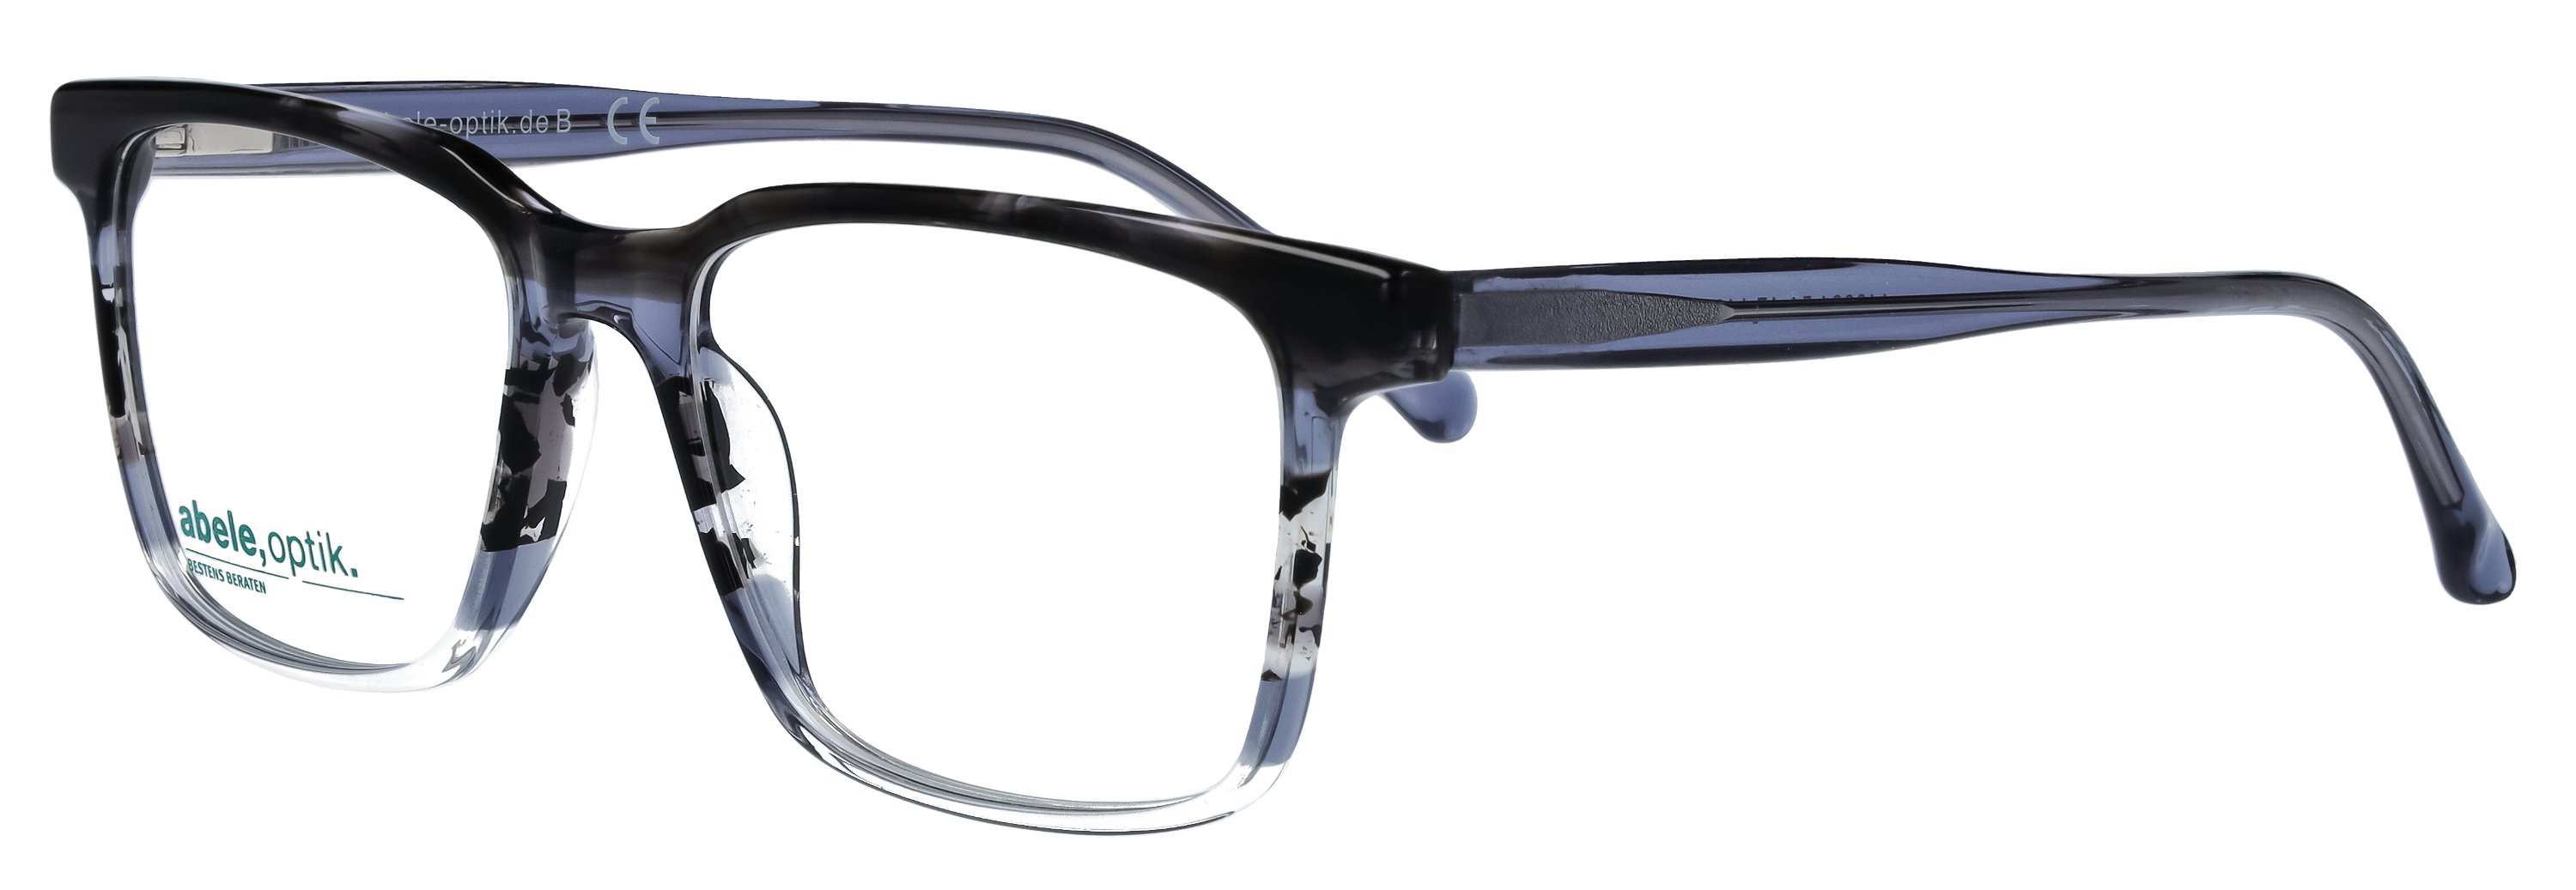 Das Bild zeigt die Korrektionsbrille 148931 von der Marke Abele Optik in dunkelgrau/blau/weiß.